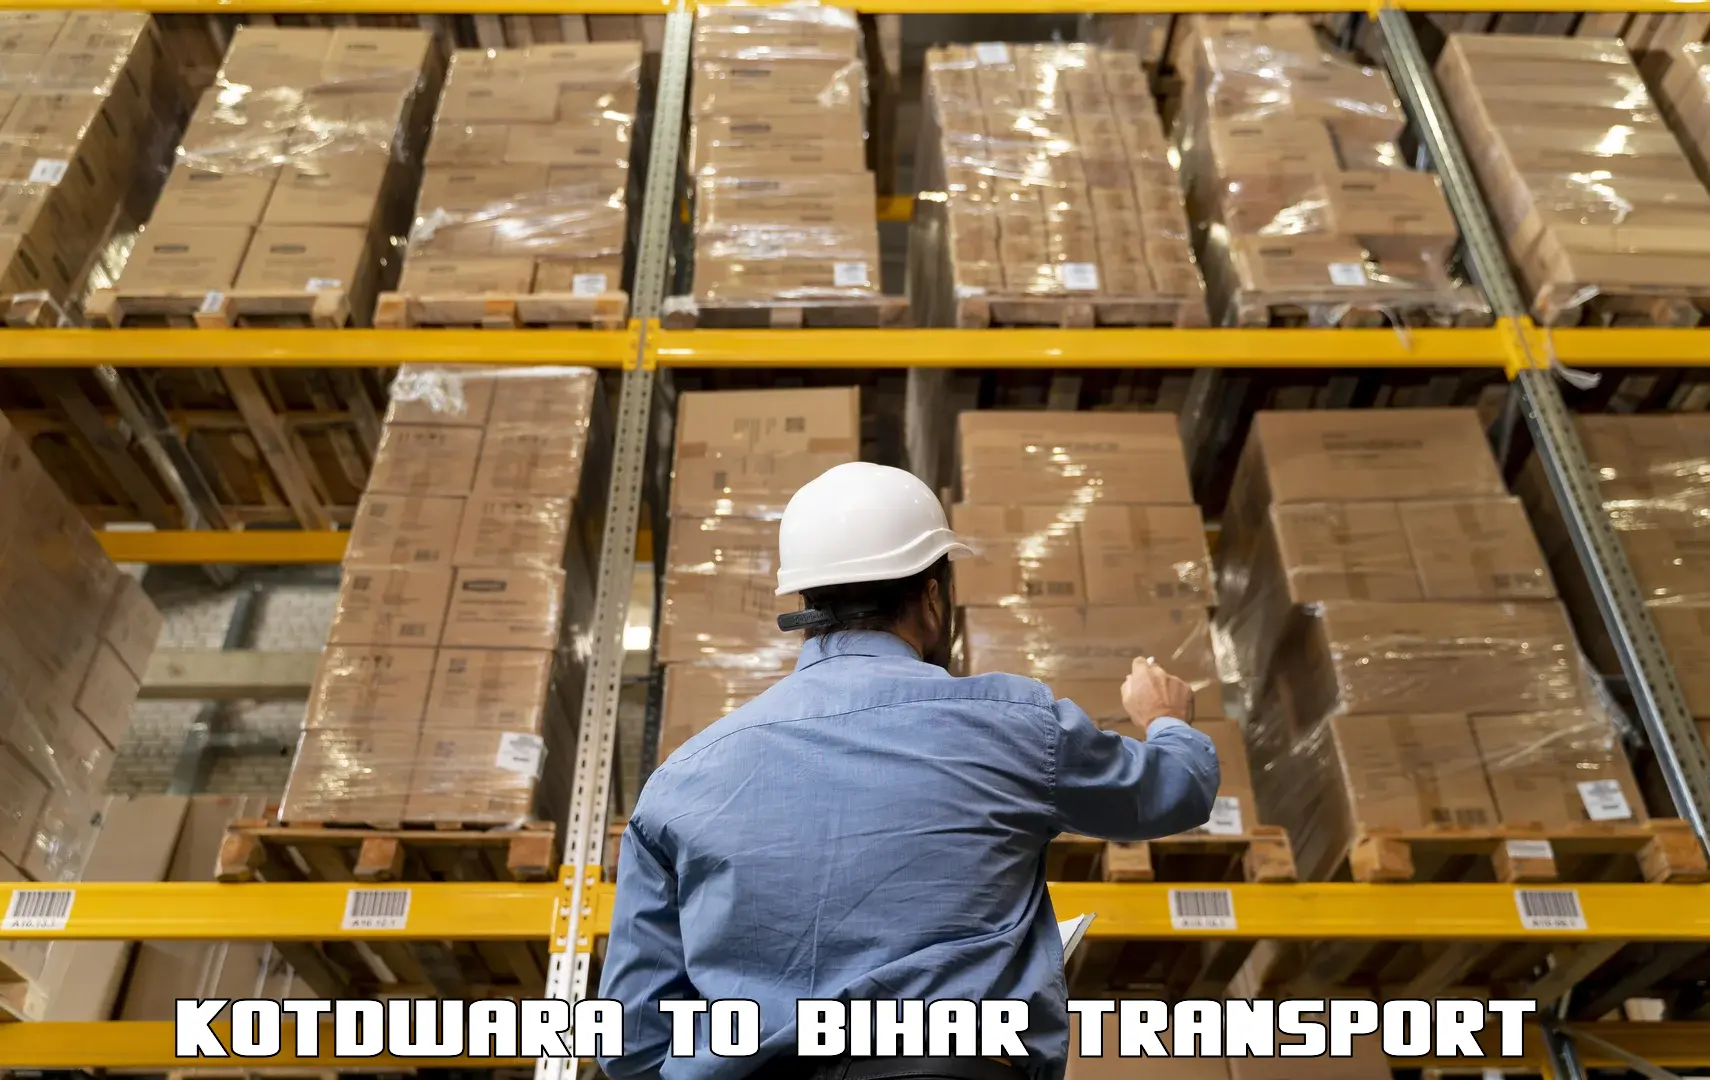 Pick up transport service Kotdwara to Bihar